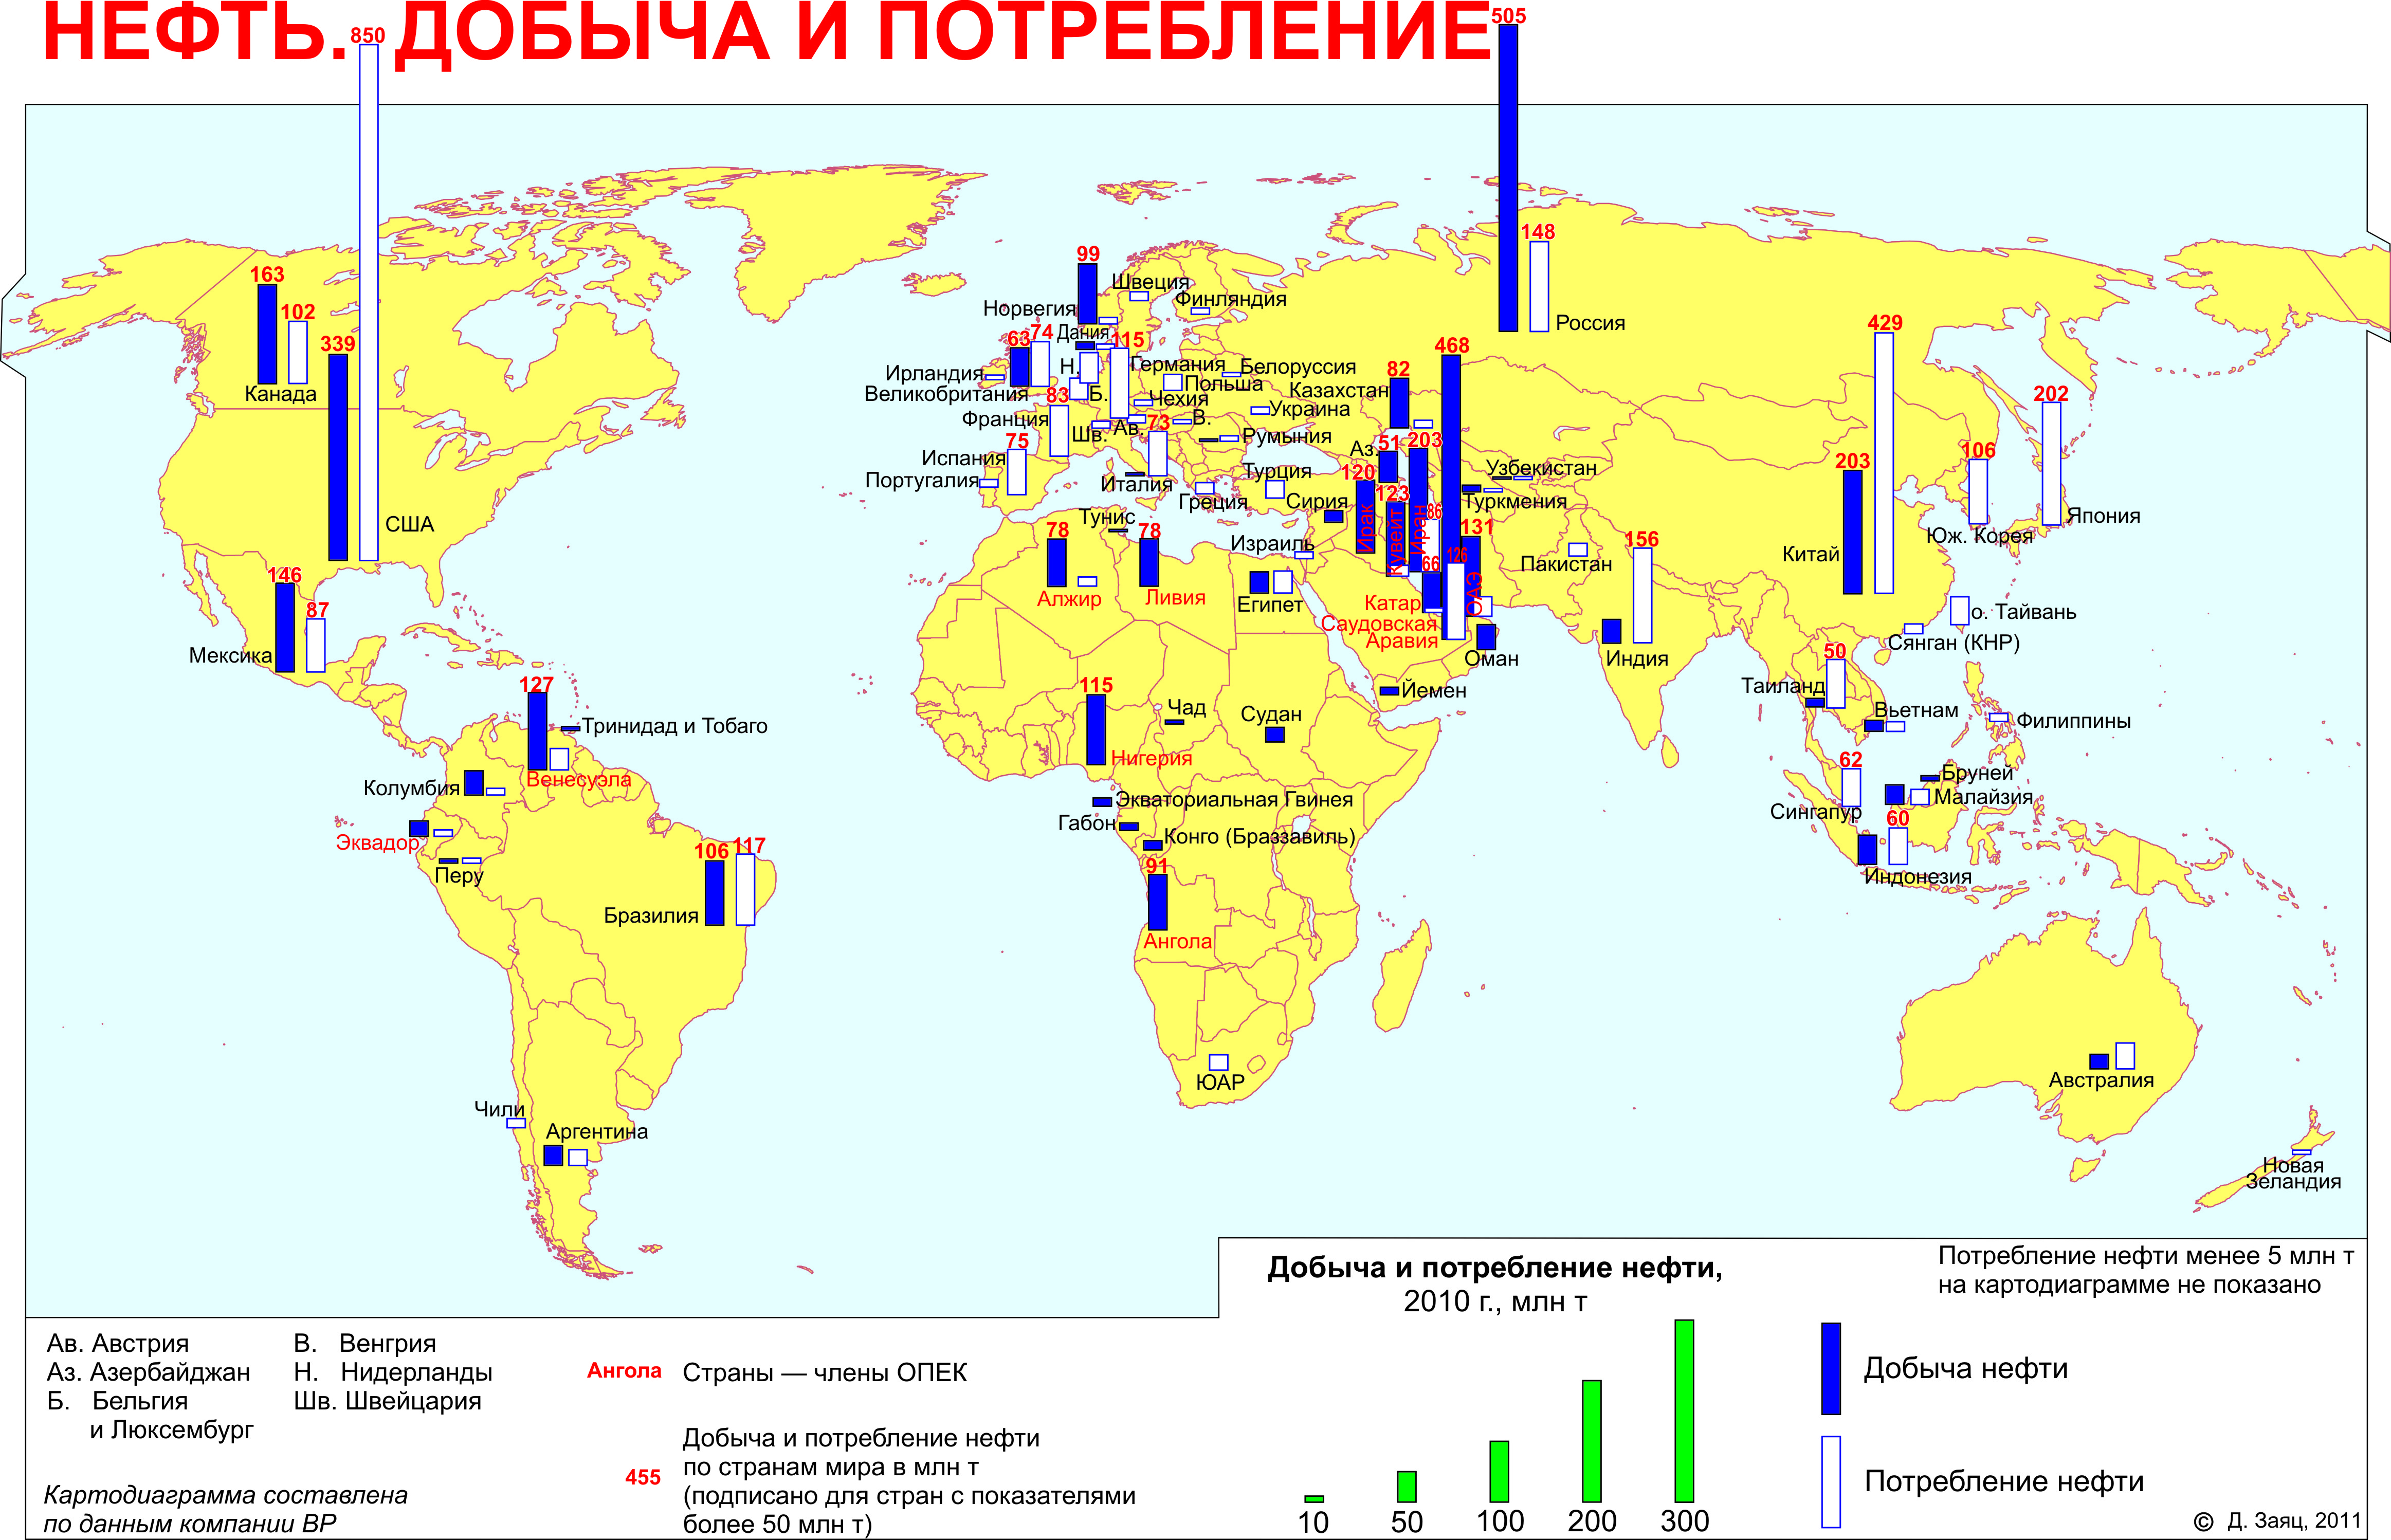 Нефть карта центр. Залежи нефти и газа в мире на карте. Залежи нефти в мире на карте. Карта добычи нефти и газа в мире. Карта залежей нефти в мире.